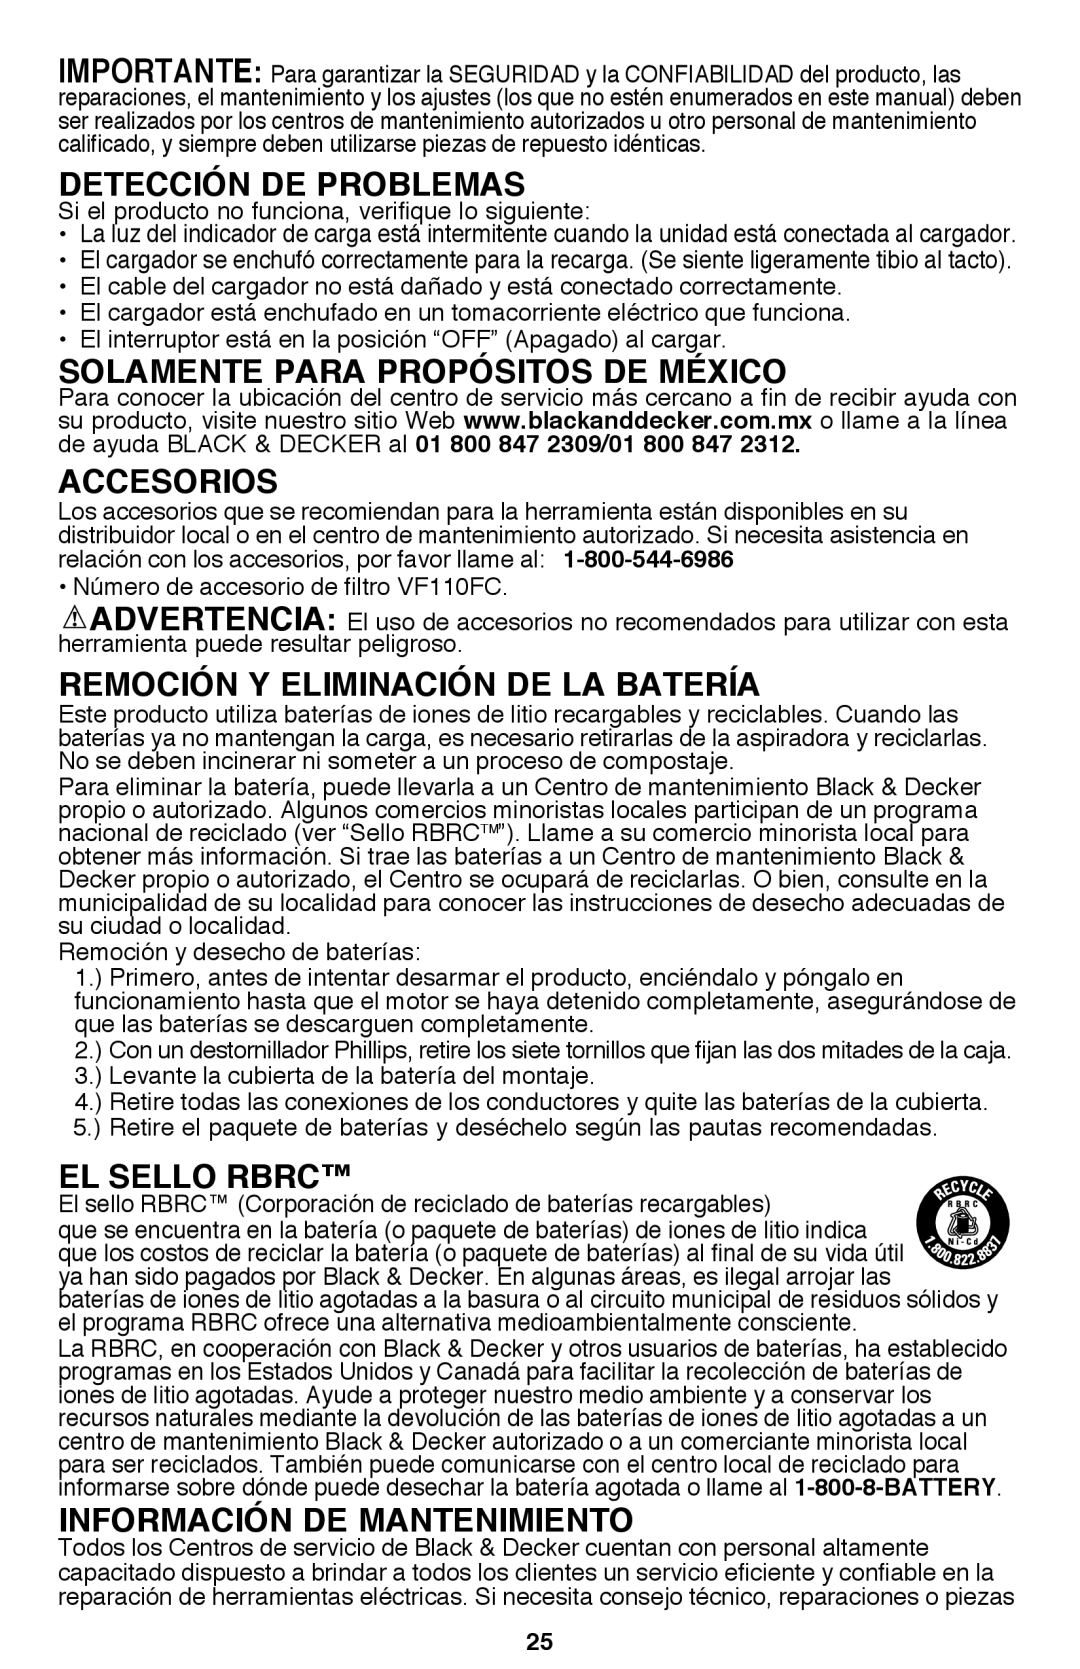 Black & Decker BDH2000L Detección de problemas, Solamente para Propósitos de México, Accesorios, El sello RBRC 